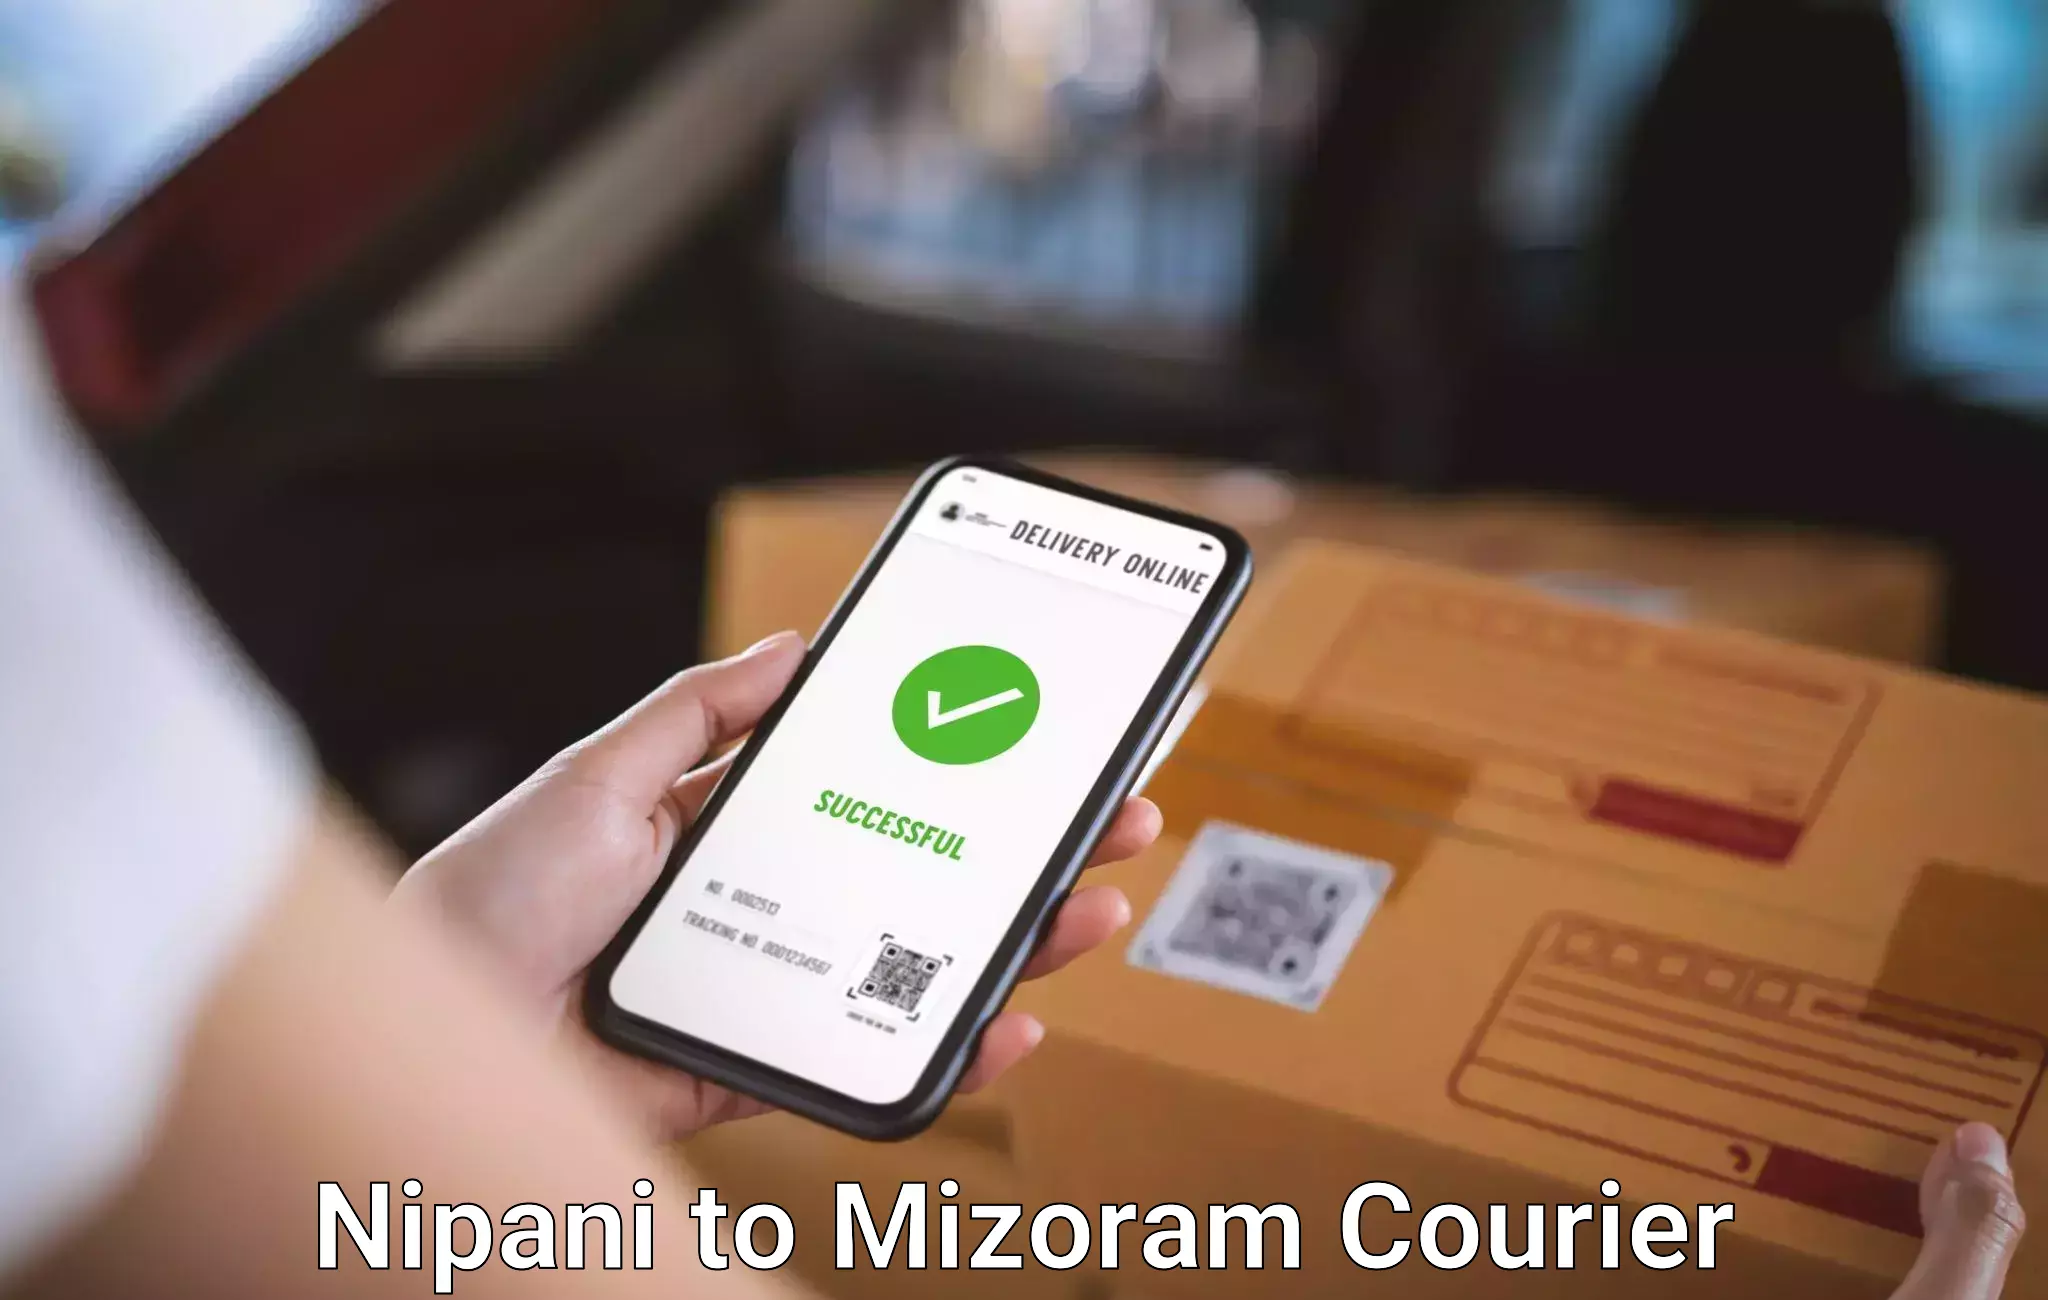 Baggage shipping experts Nipani to Mizoram